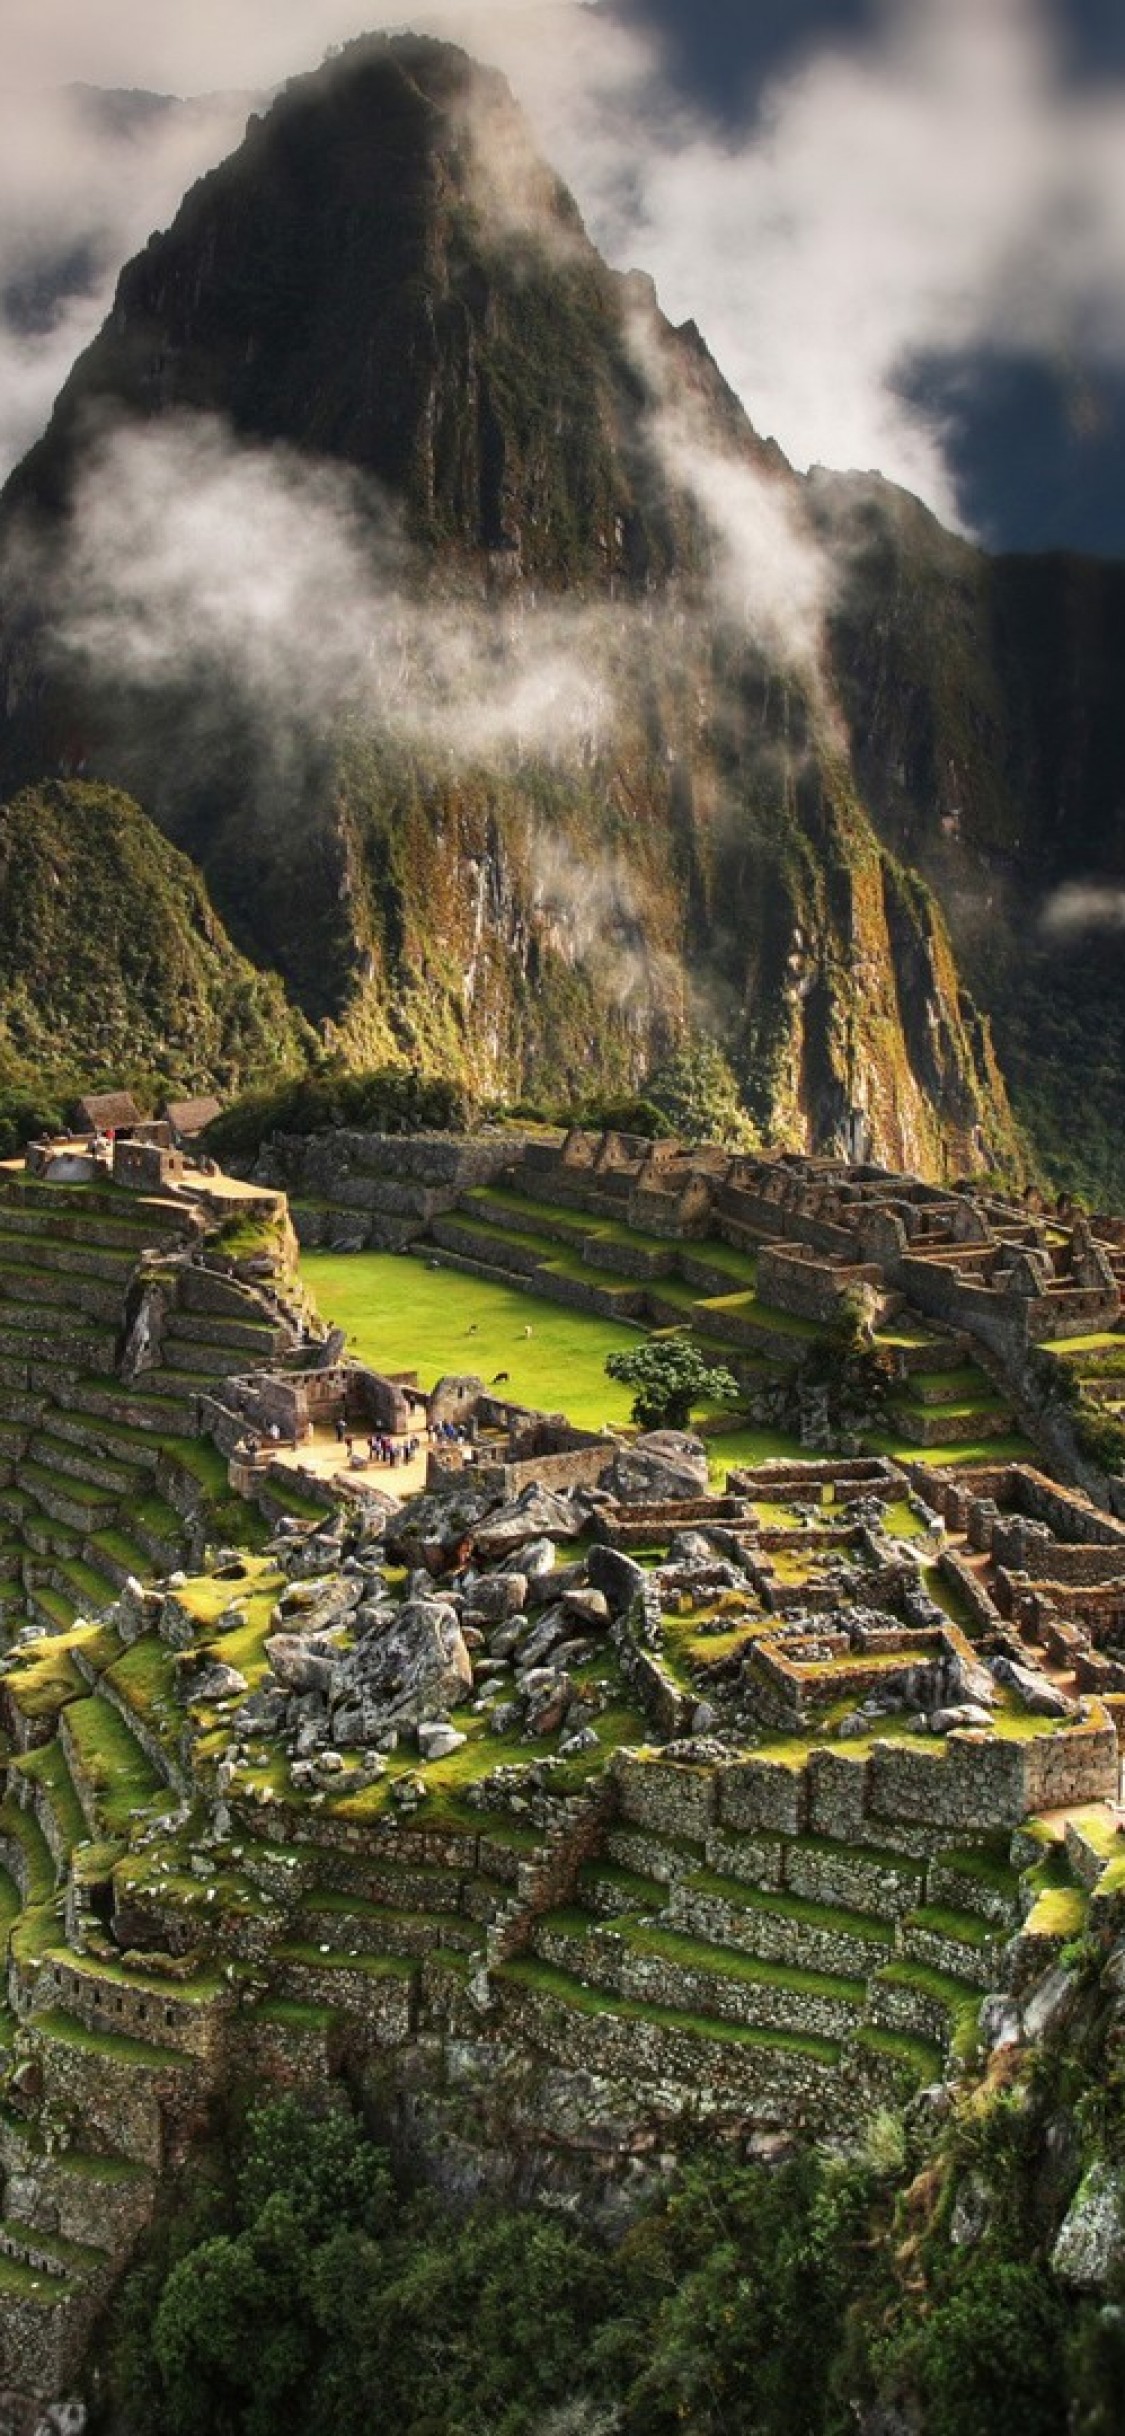 Iphone X Peru Wallpaper - Machu Picchu - 1125x2436 Wallpaper 